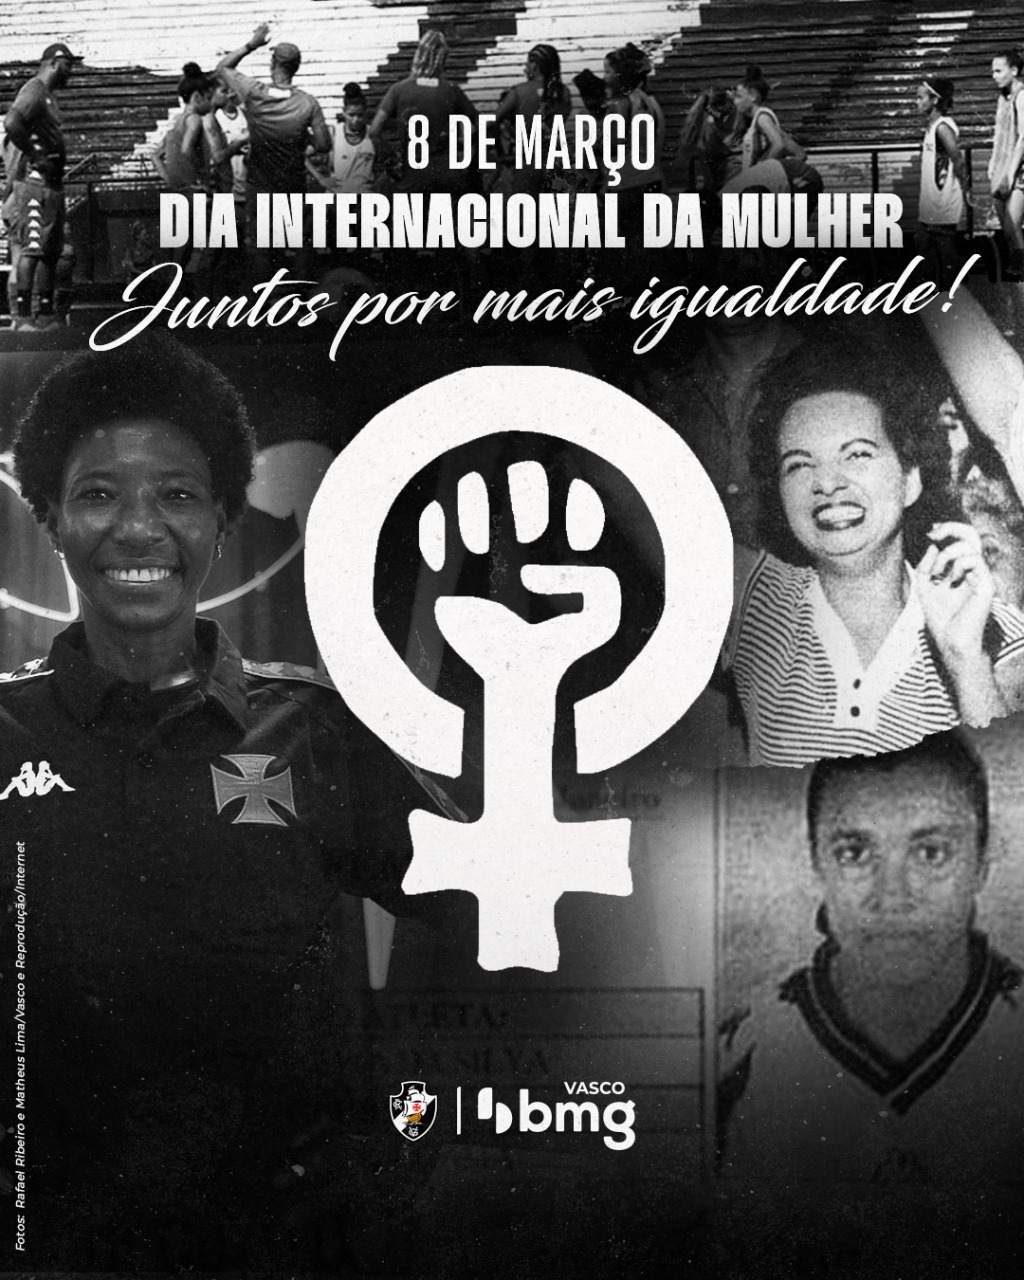 Montagem do Vasco no dia Internacional da Mulher